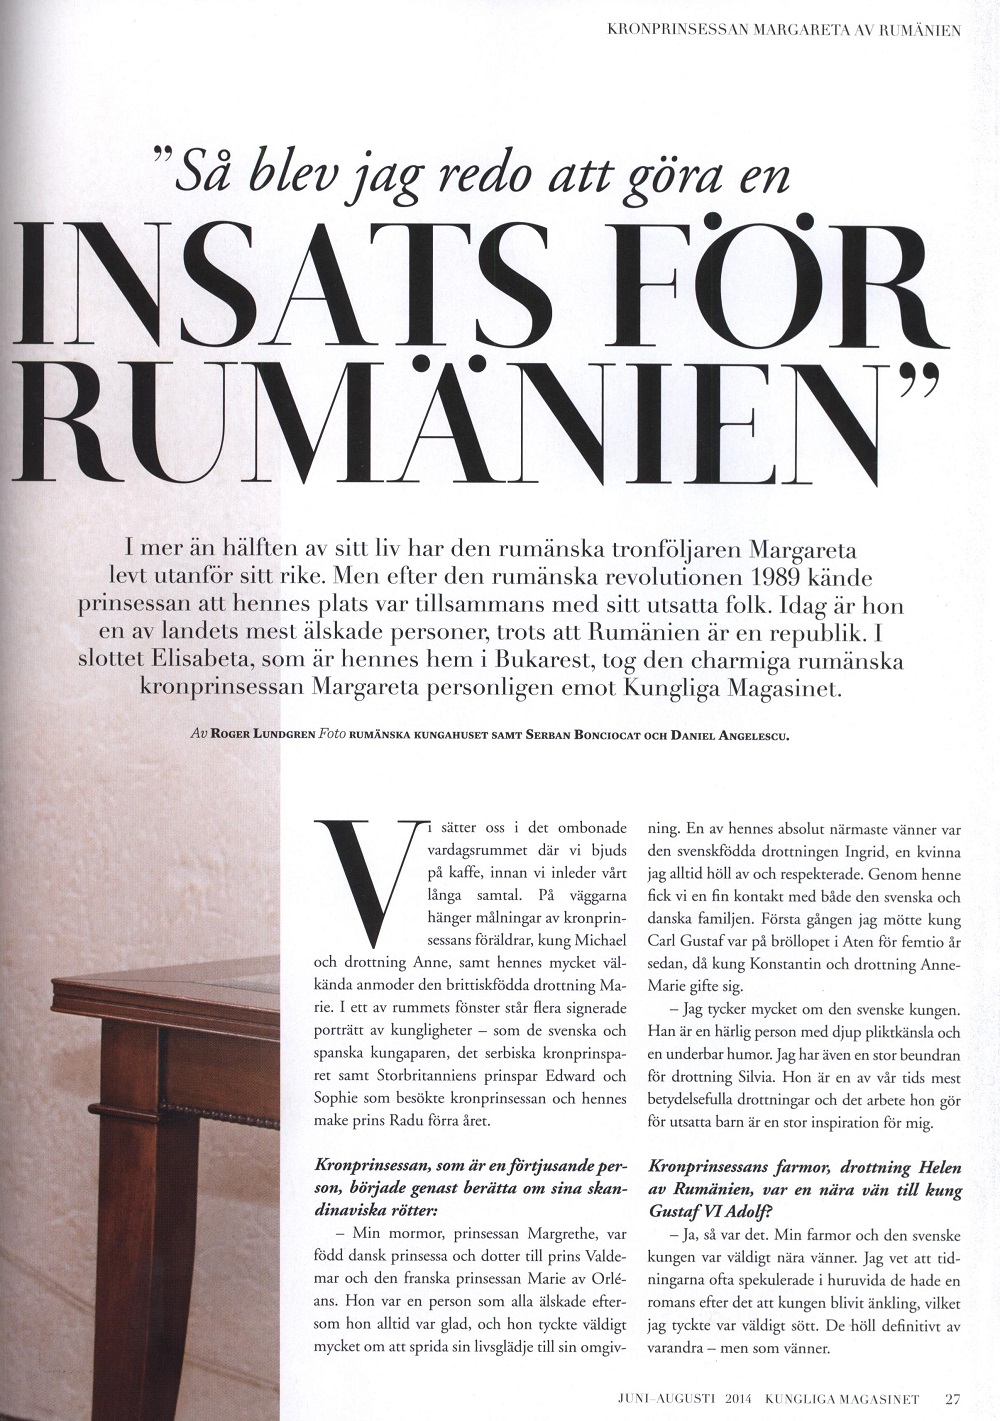 Королевская семья Румынии на страницах шведского журнала Kungliga Magasinet 